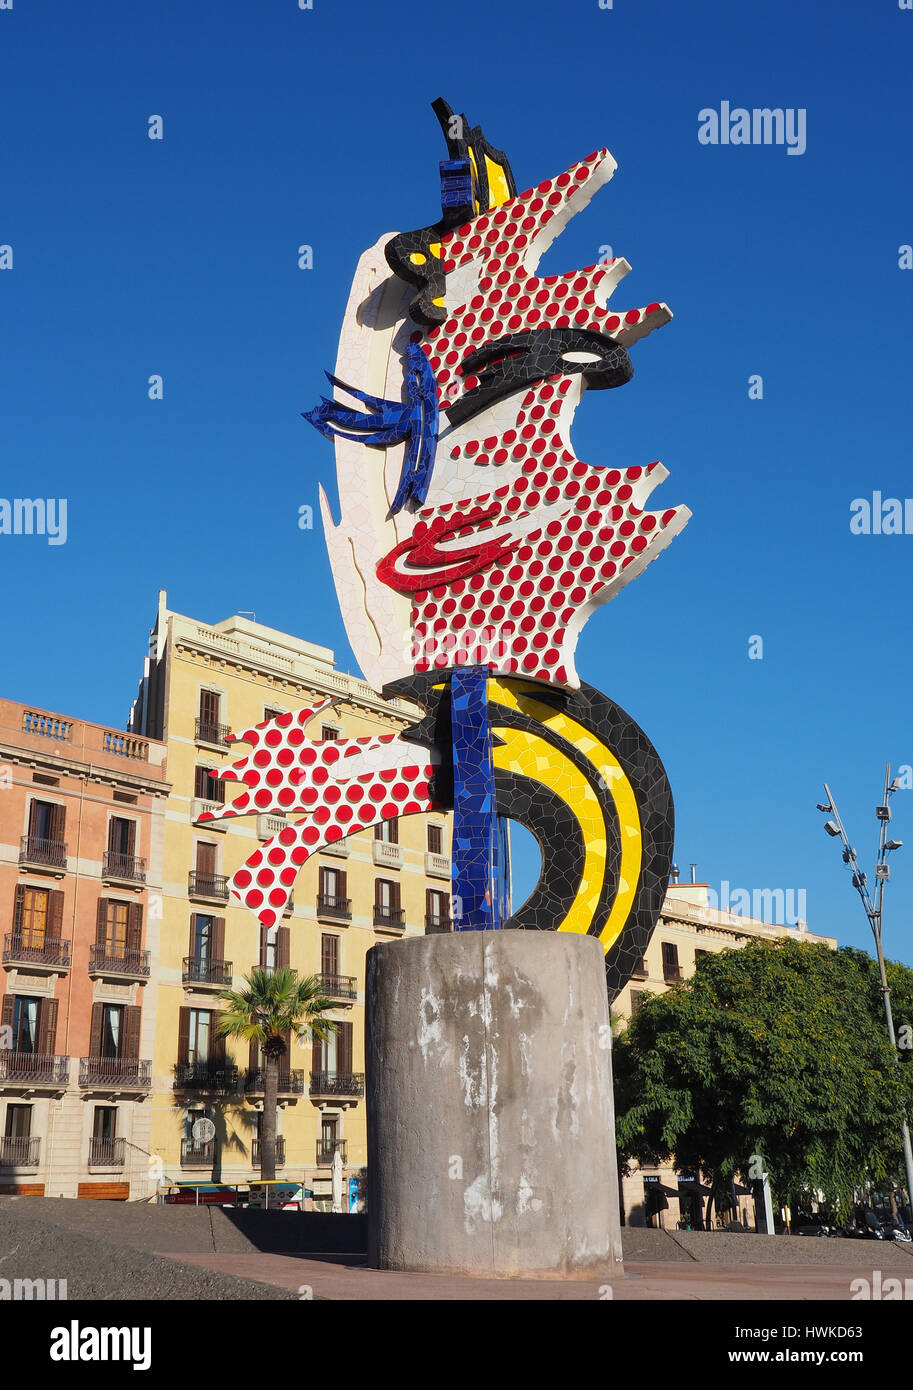 Roy Lichtenstein Head sculpture in Barcelona, Spain Stock Photo - Alamy